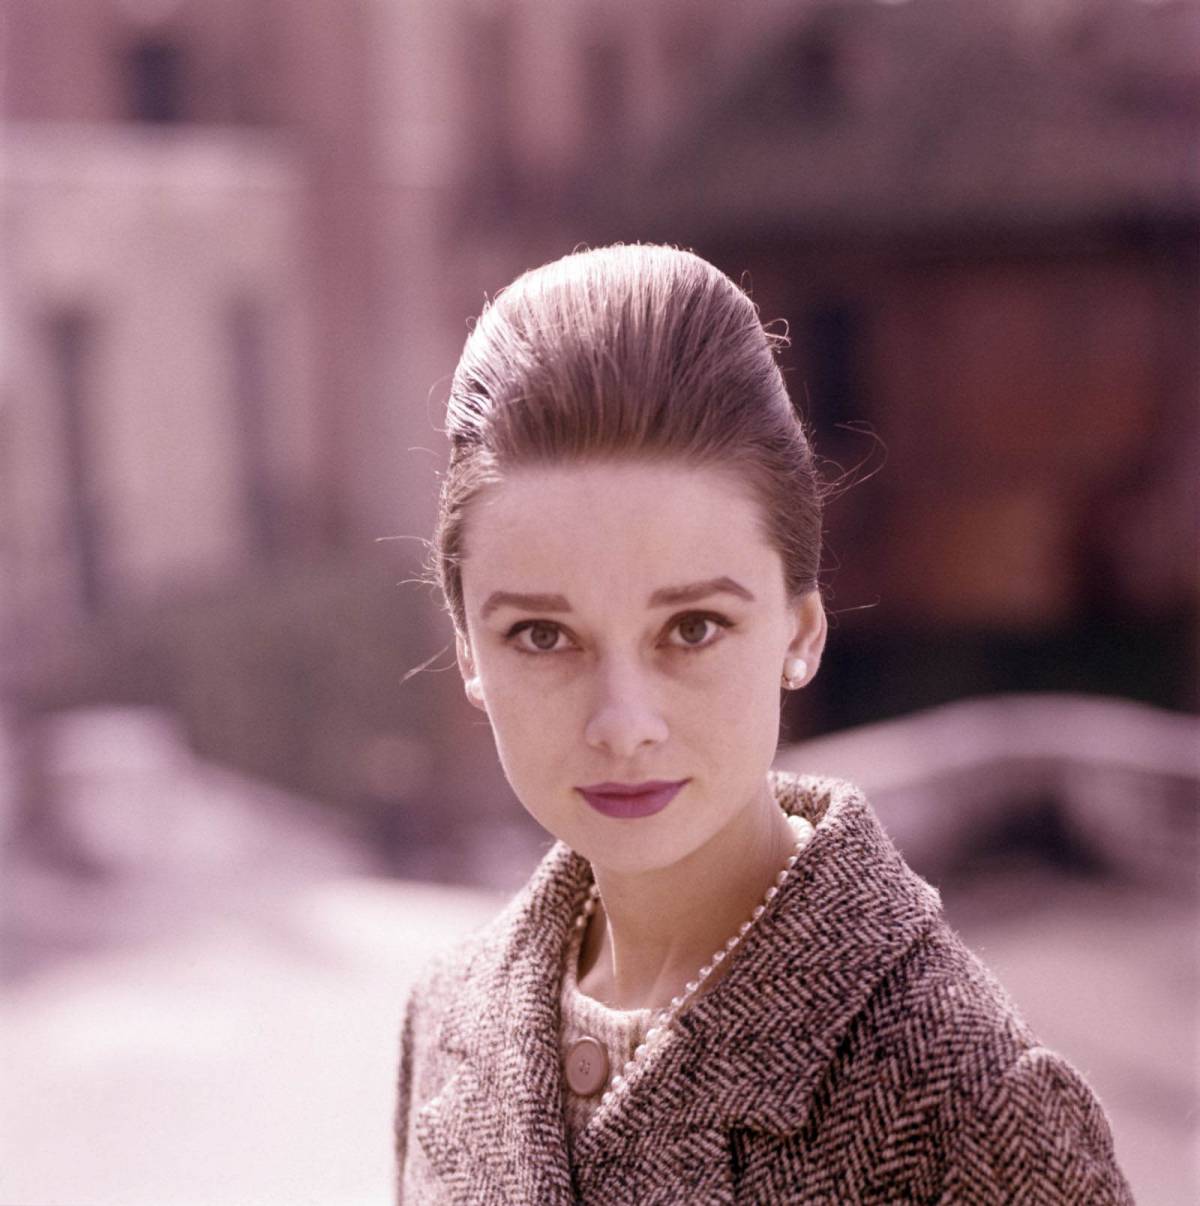 "Fascino, innocenza e talento": la lezione ai posteri dell'immortale Audrey Hepburn